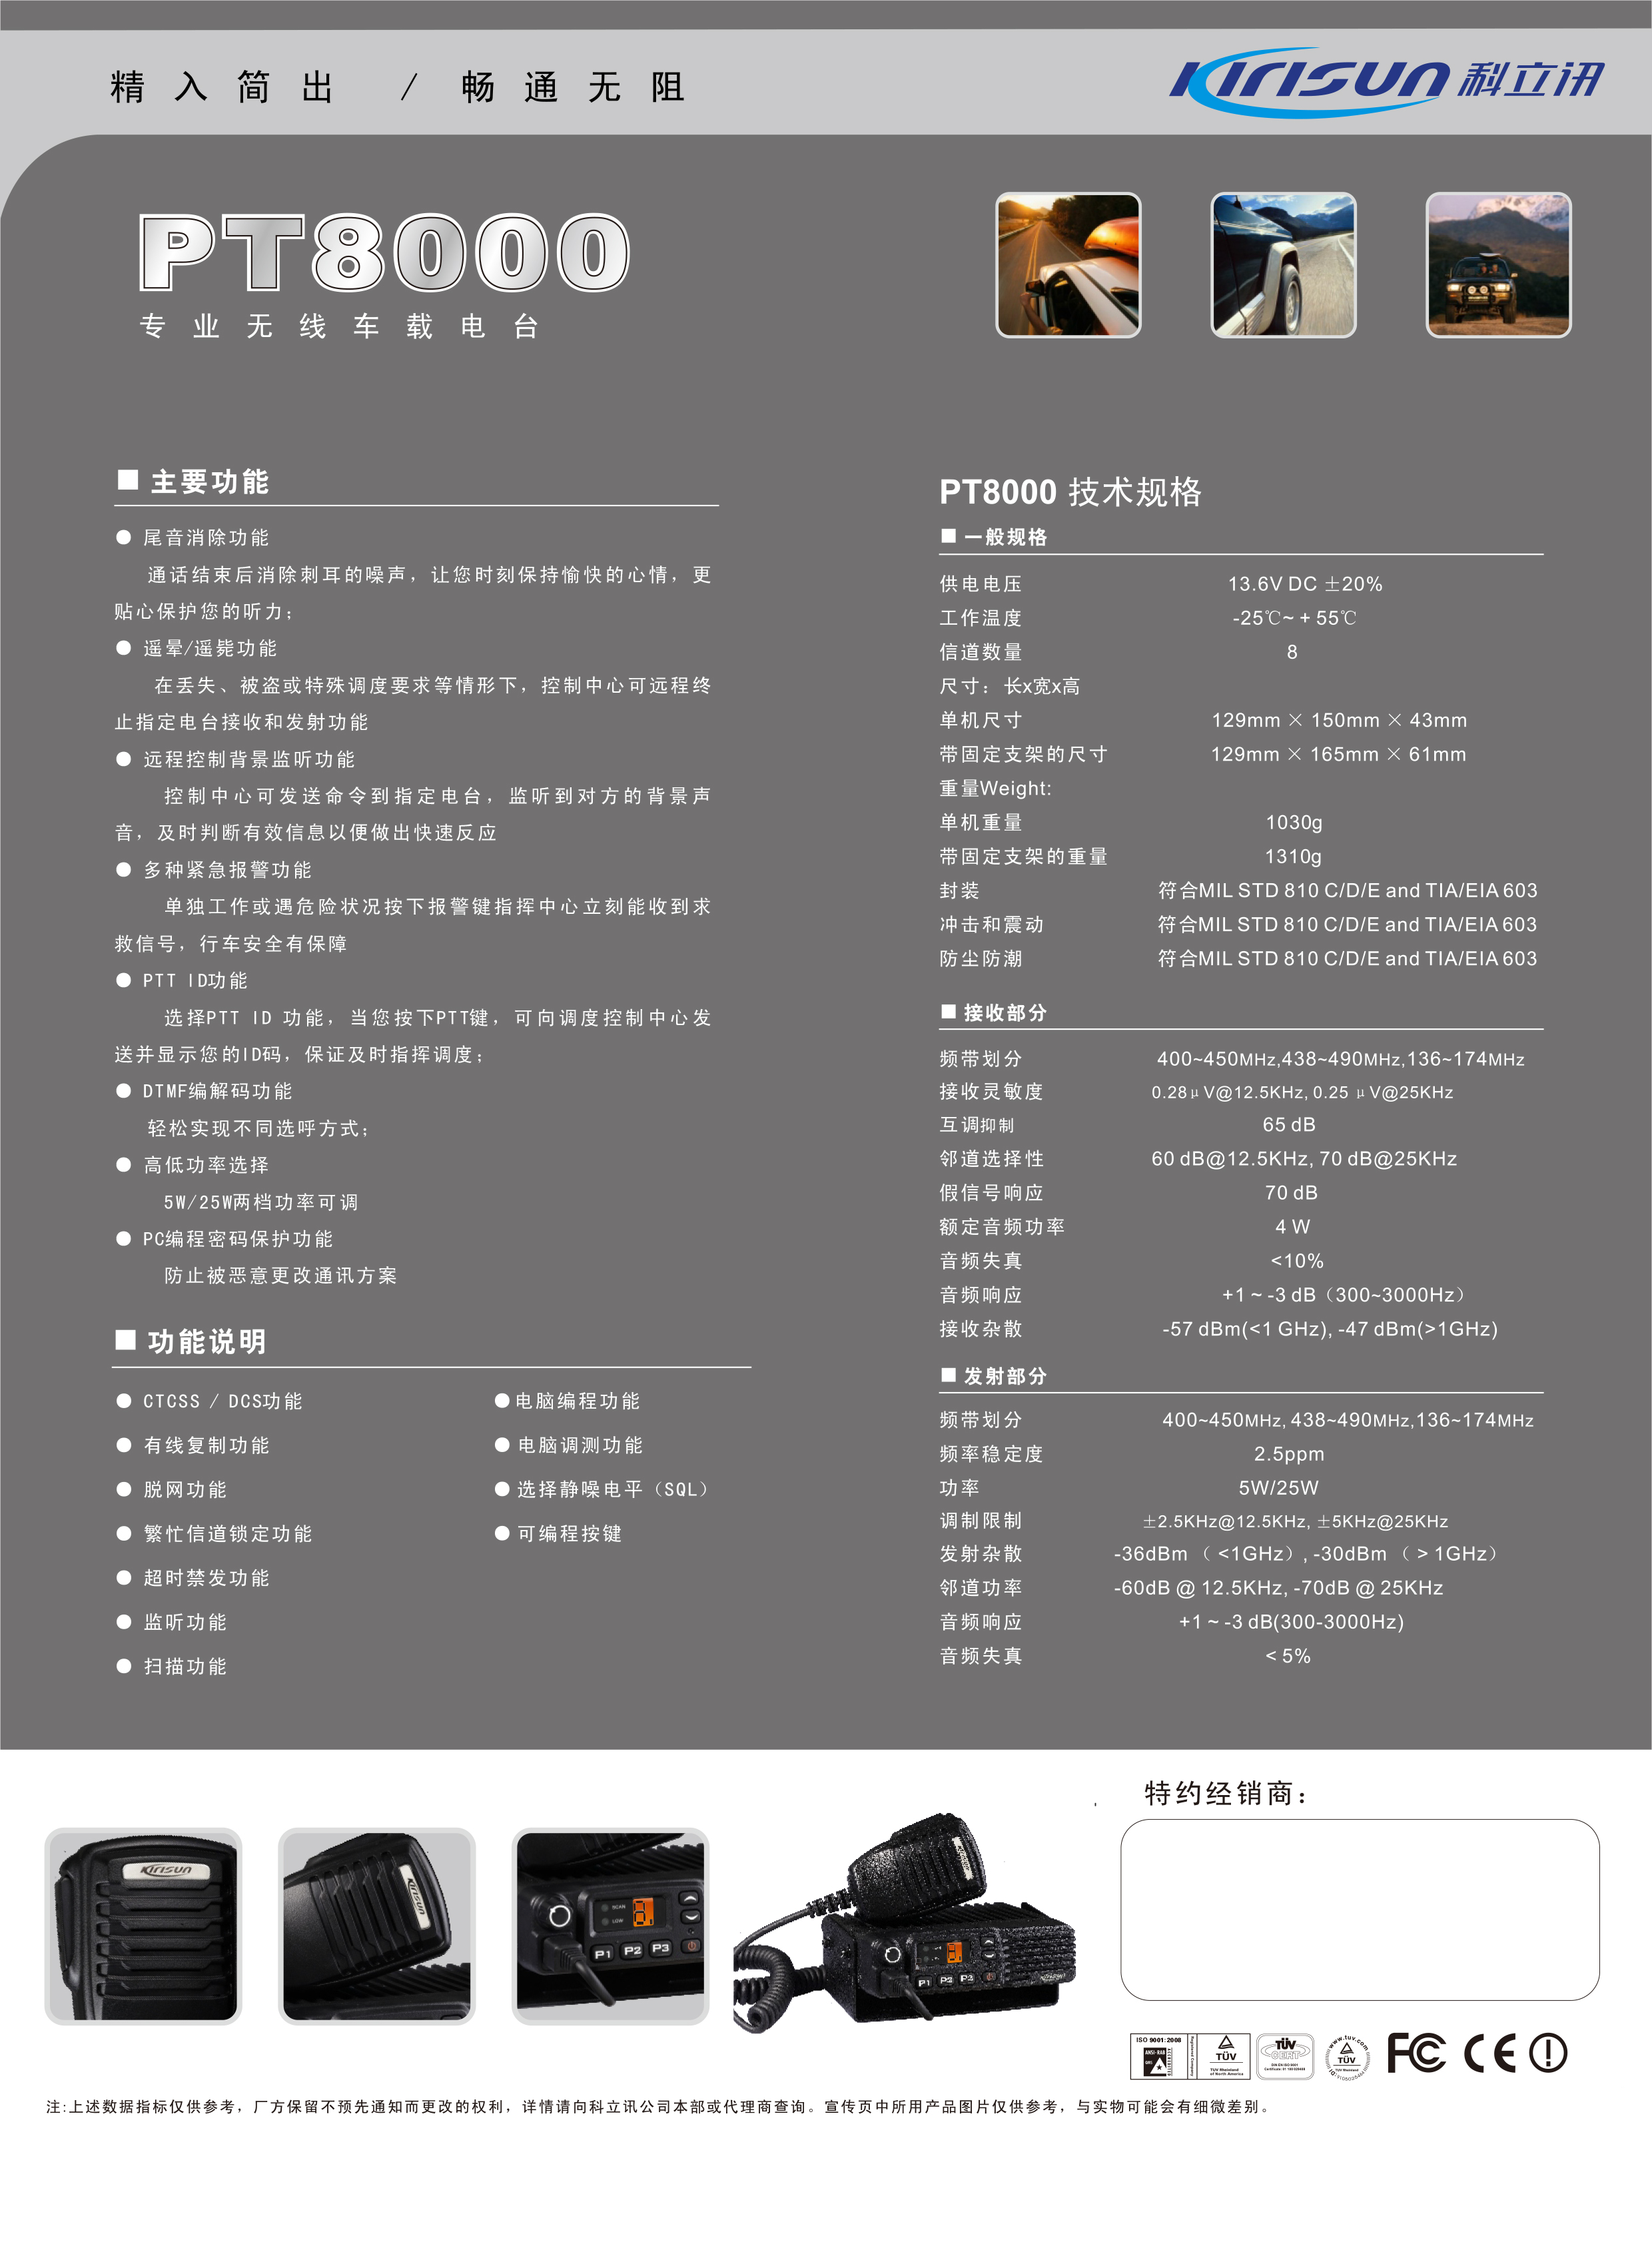 PT8000中文彩页-2